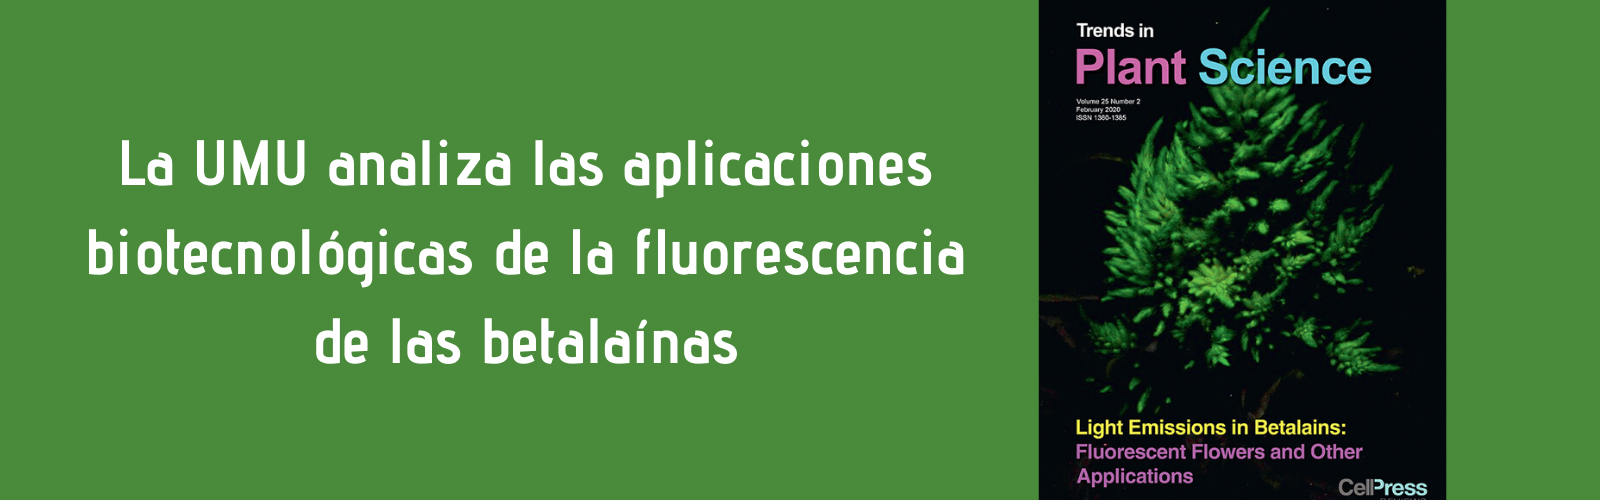 La Universidad de Murcia analiza las aplicaciones biotecnológicas de la fluorescencia en pigmentos vegetales